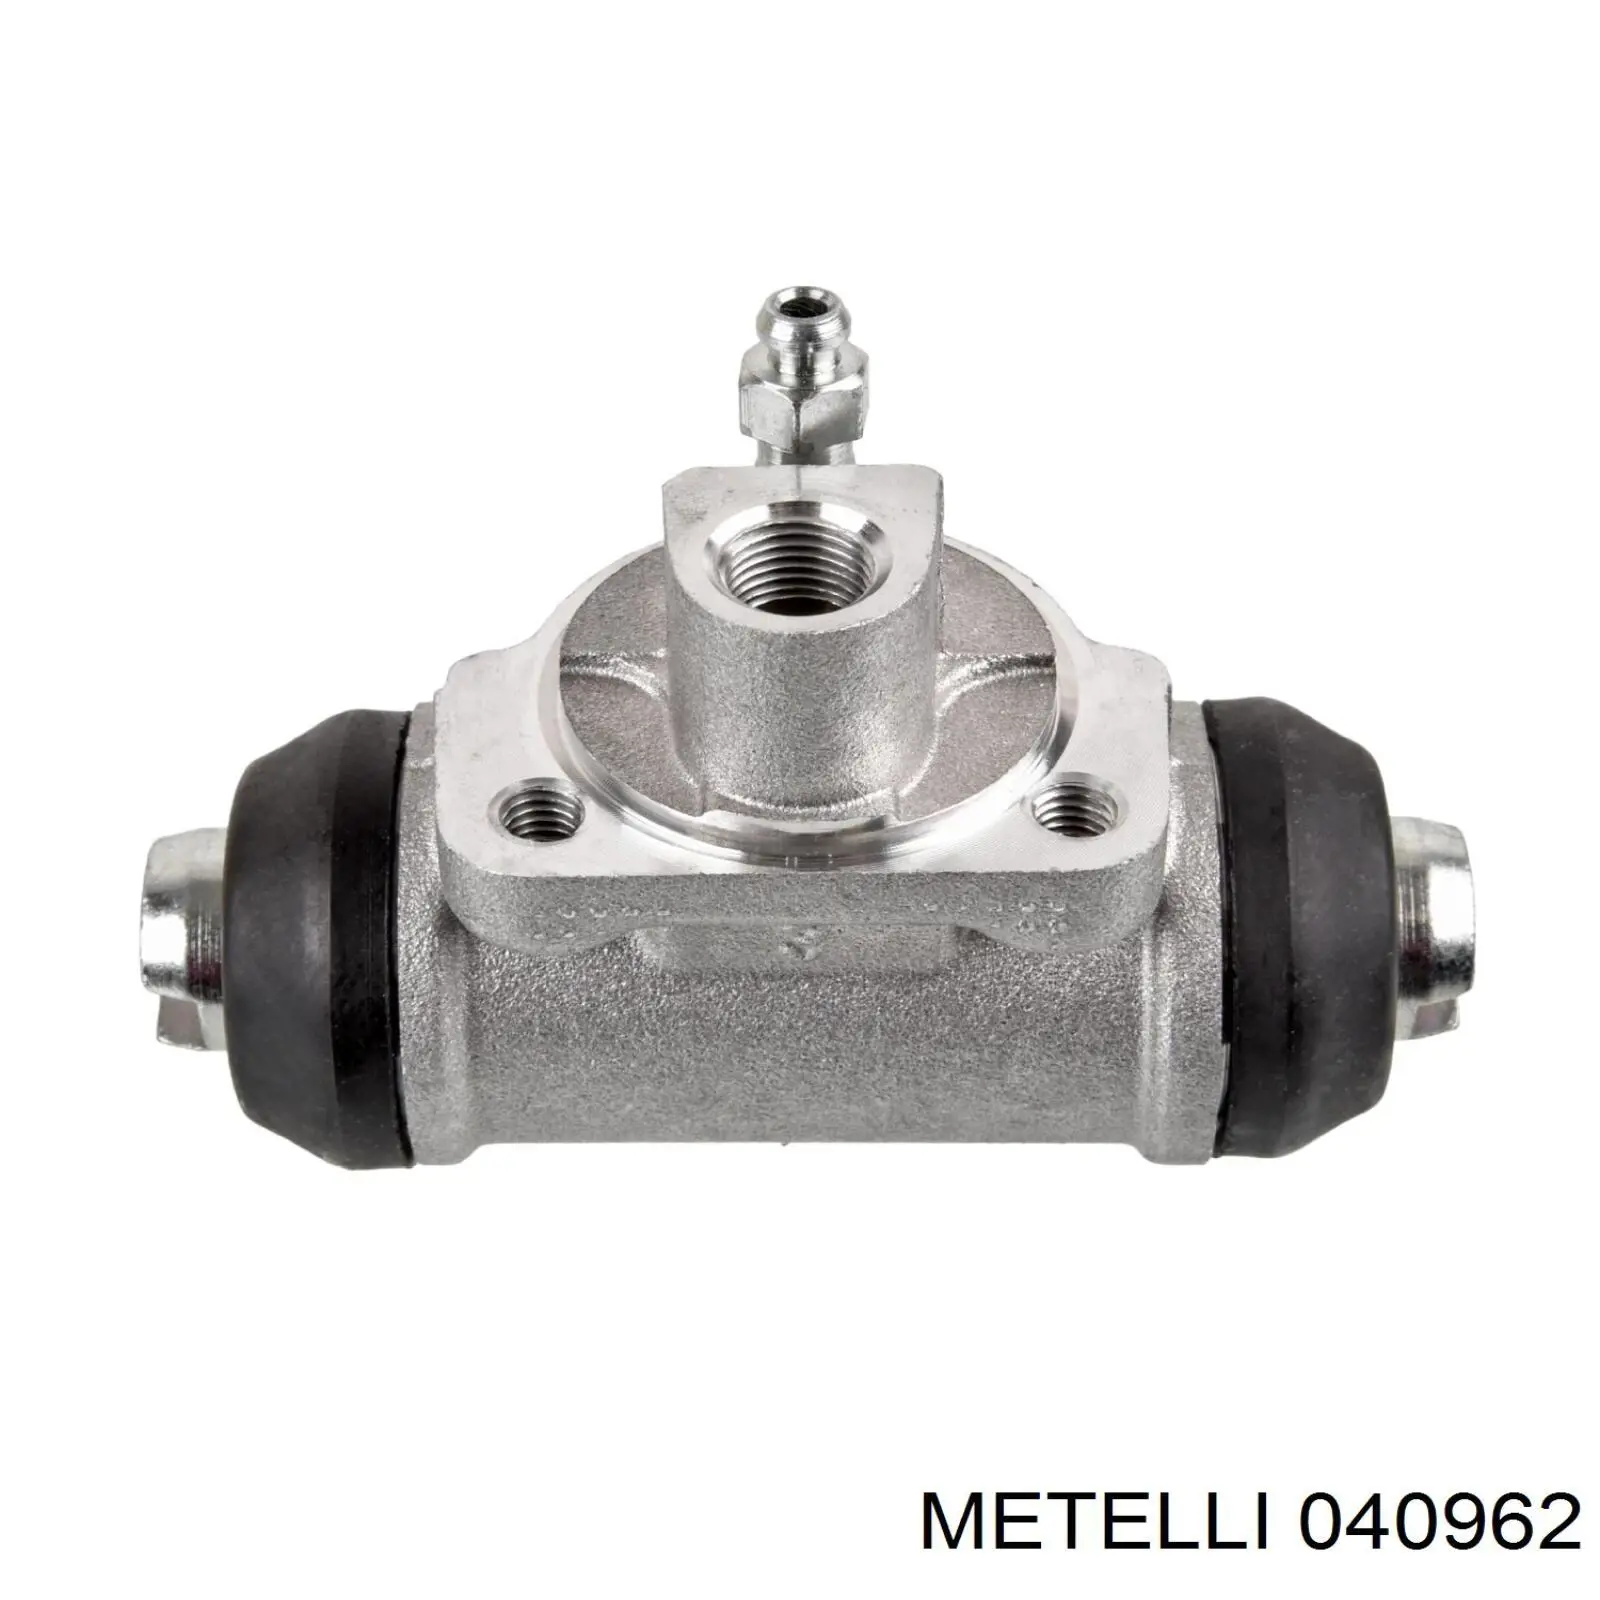 04-0962 Metelli cilindro de freno de rueda trasero